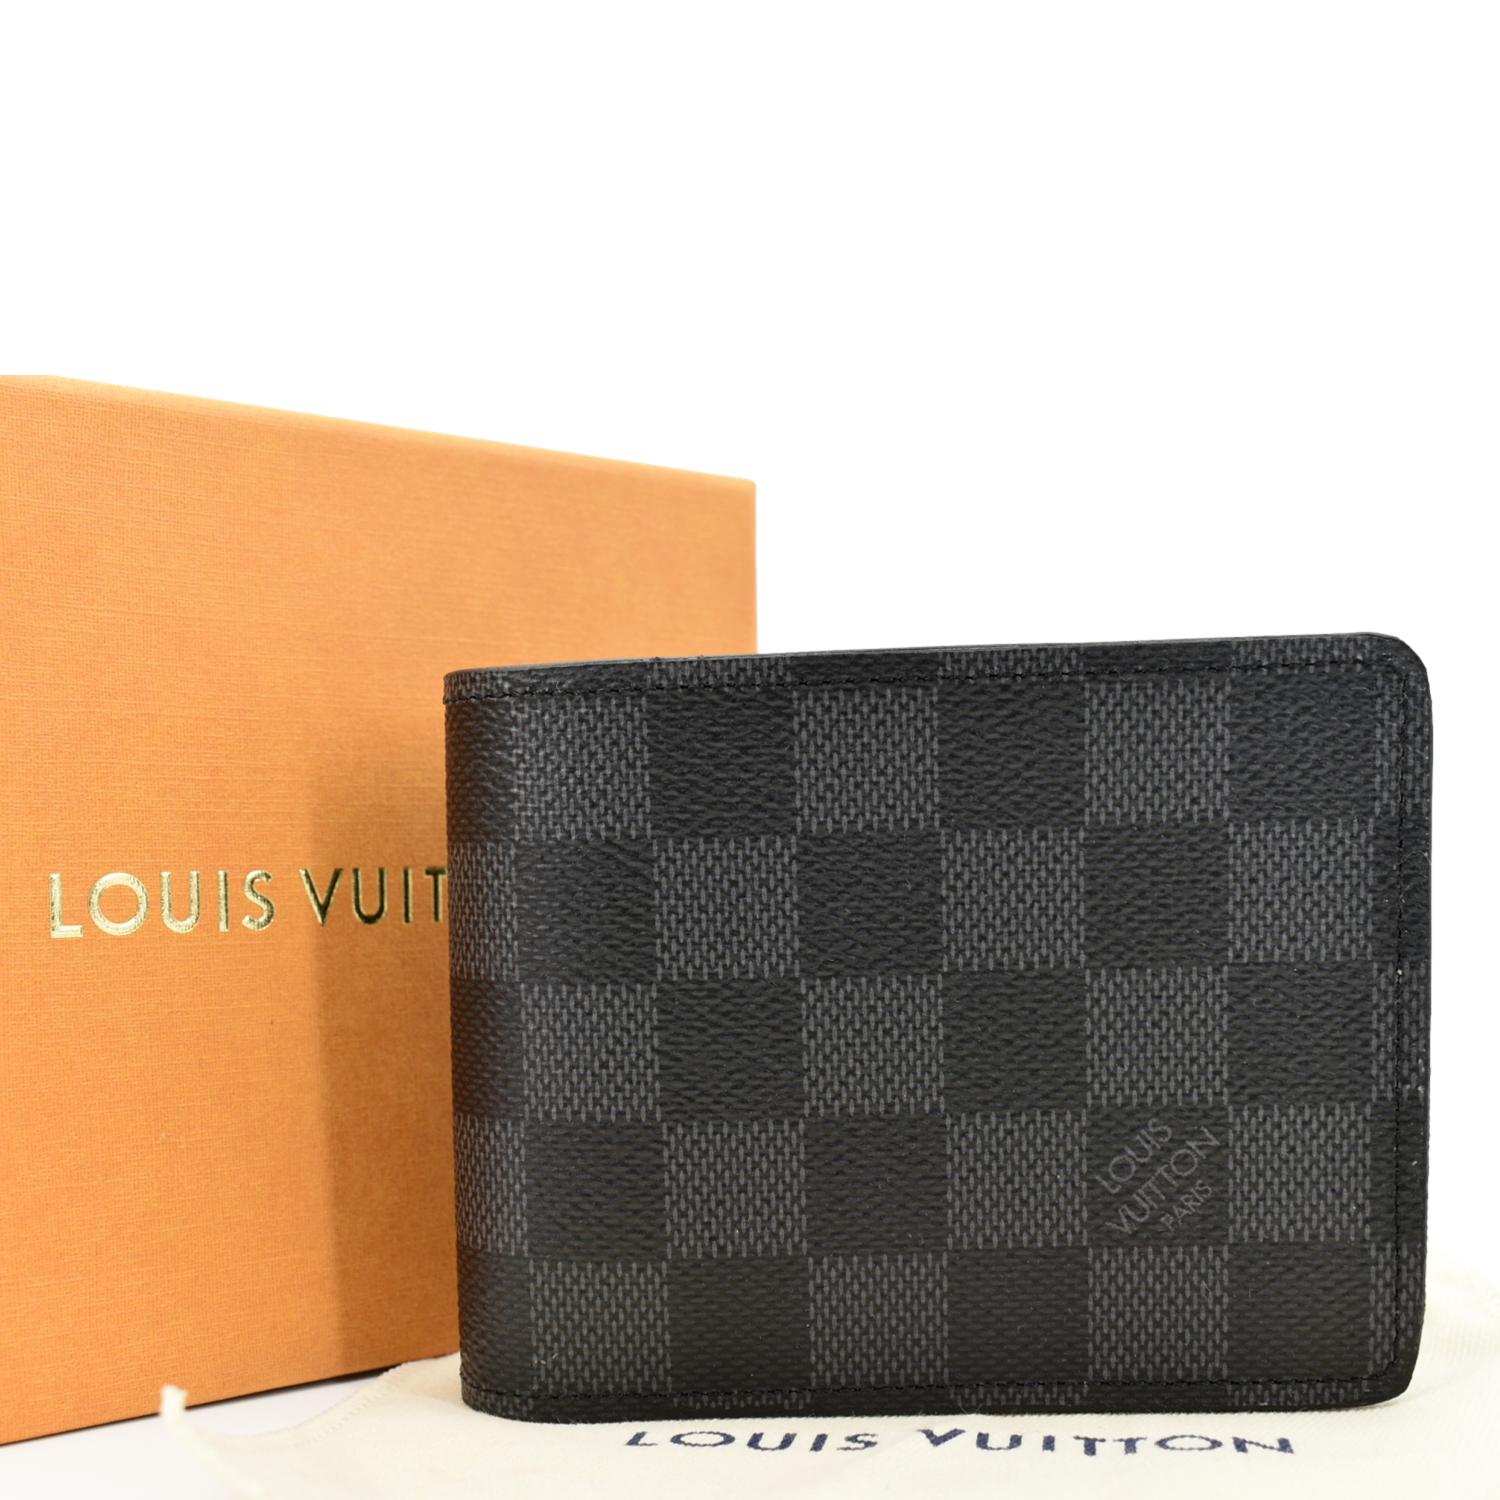 Shop authentic Louis Vuitton Damier Graphite Multiple Wallet at